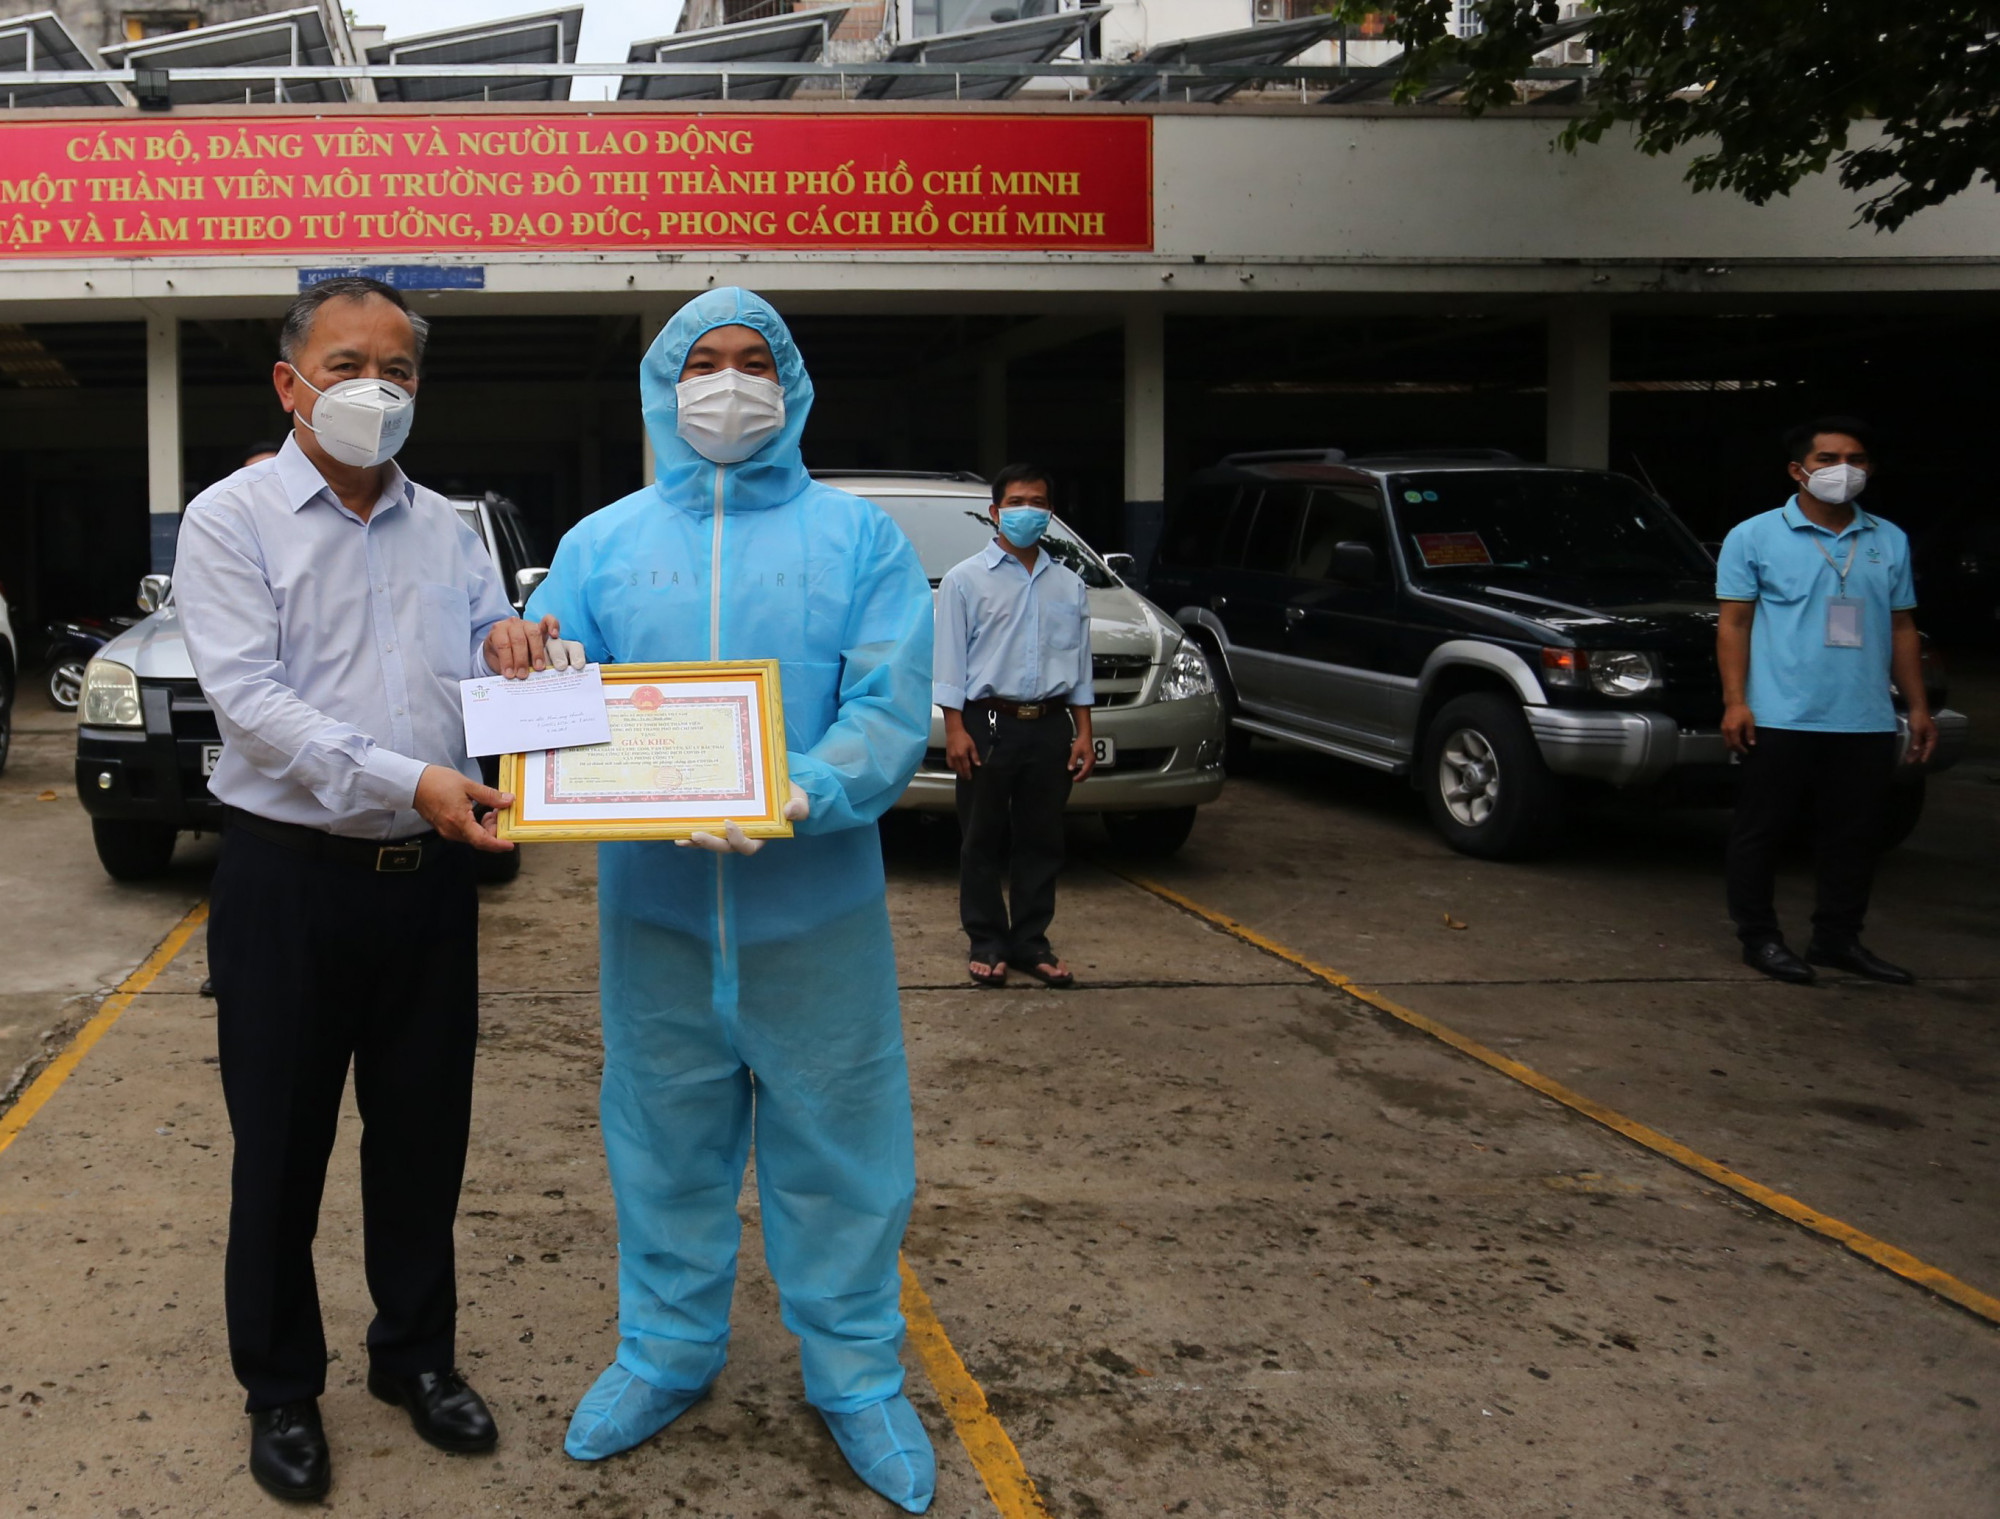 Ông Huỳnh Minh Nhựt - Bí thư Đảng ủy, Giám đốc Công ty MTĐT TPHCM trao giấy khen và tiền thưởng cho đại diện ứng nhanh kiểm tra công tác thu gom, vận chuyển và xử lý chất thải y tế phát sinh do dịch COVID-19 - Ảnh: Thành Khoa